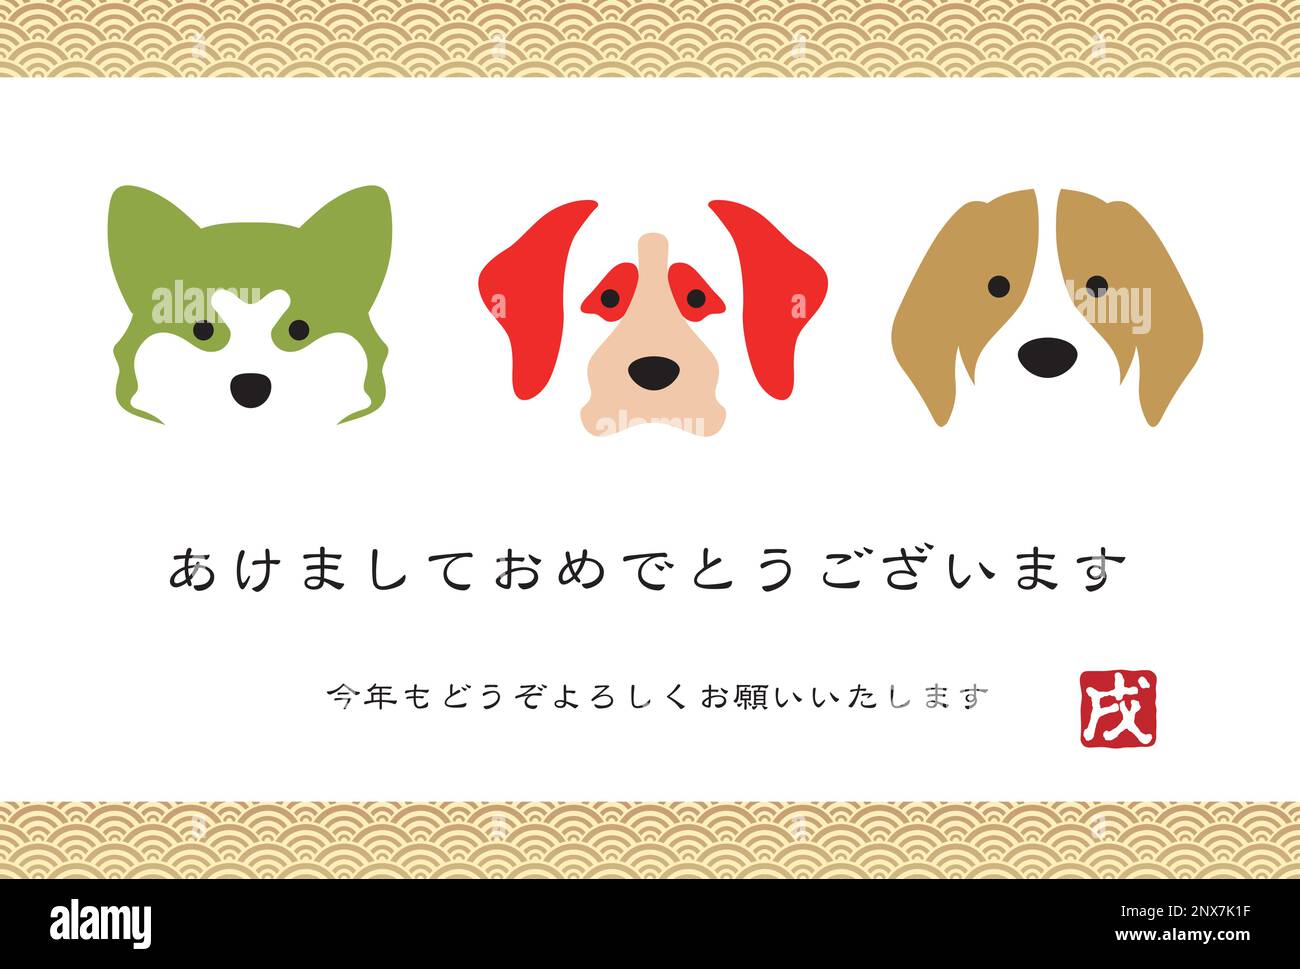 Vorlage für Vektor-Grußkarten zum Neujahrsjahr des Hundes mit japanischem Text. (Textübersetzung - Frohes neues Jahr. Wir freuen uns darauf, Ihre Unterstützung zu behalten Stock Vektor